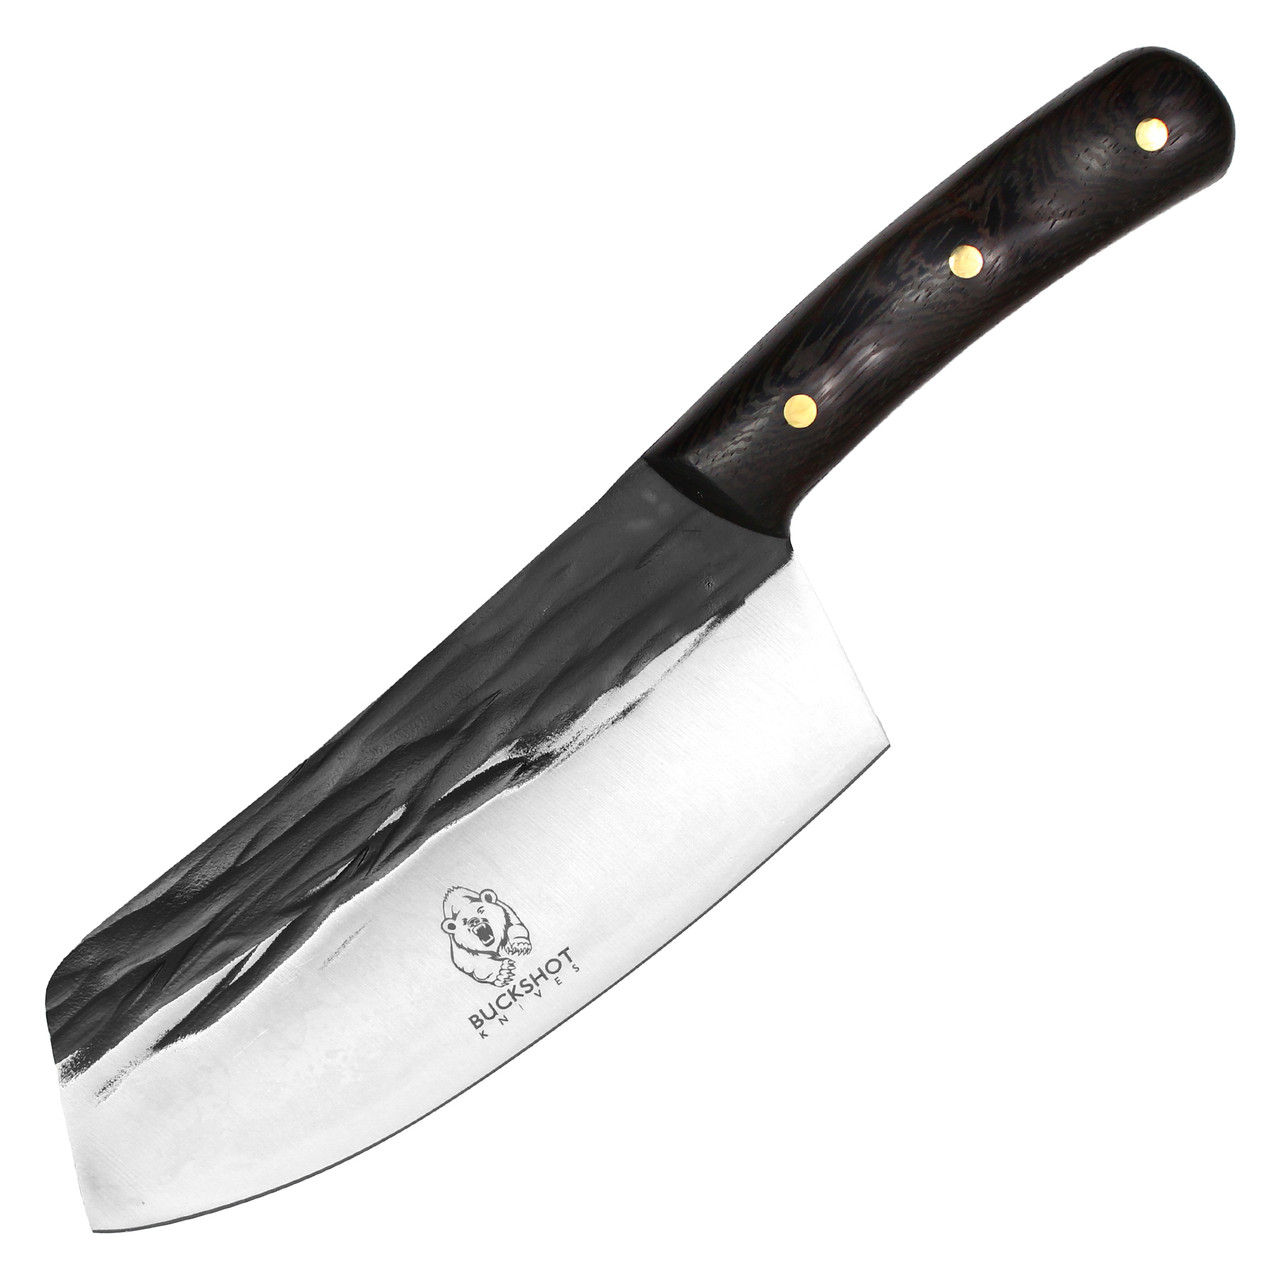 11.5" Cleaver Butcher Knife